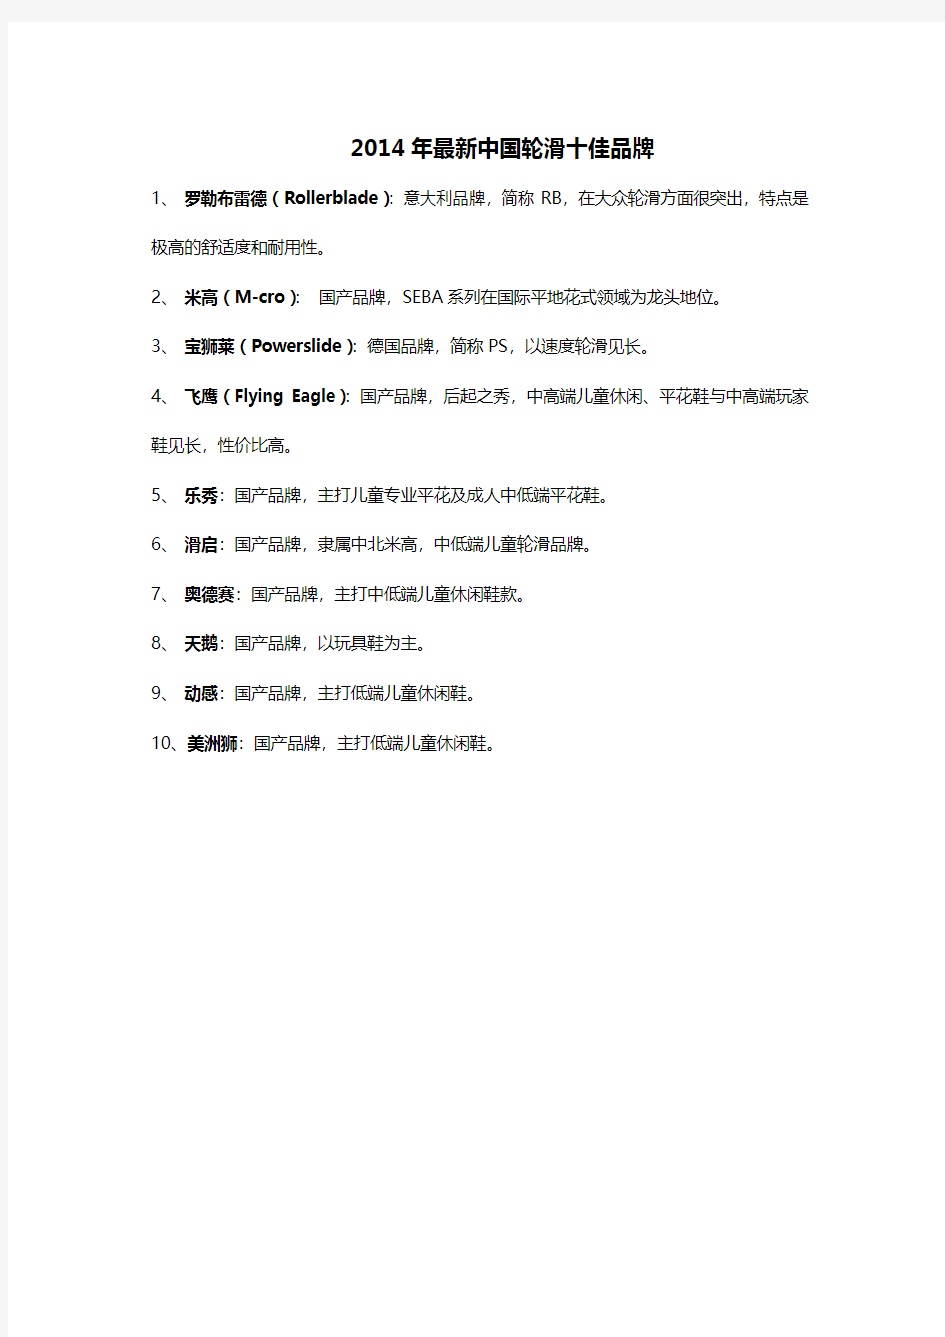 2014年最新中国轮滑十佳品牌最具权威排名